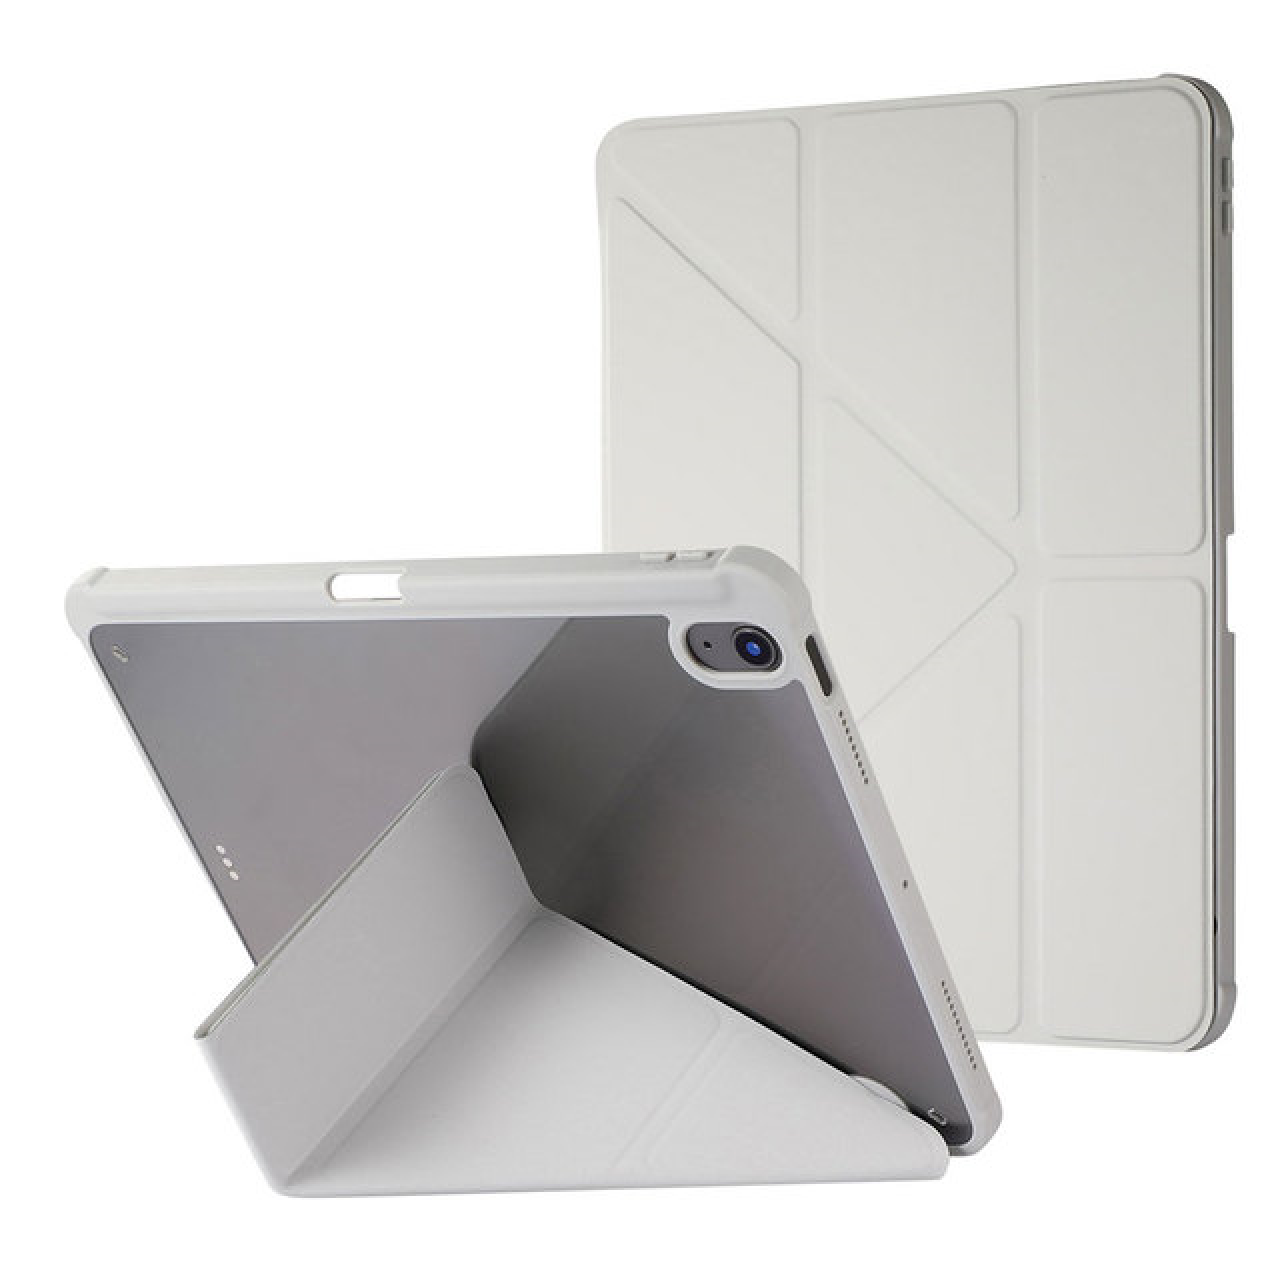 Θήκη Τάμπλετ Μαγνητική Apple iPad pro 11 inch 18-20-21-22 με Προστασία Κάμερας και Θέση για Γραφίδα - Tablet Case - Grey